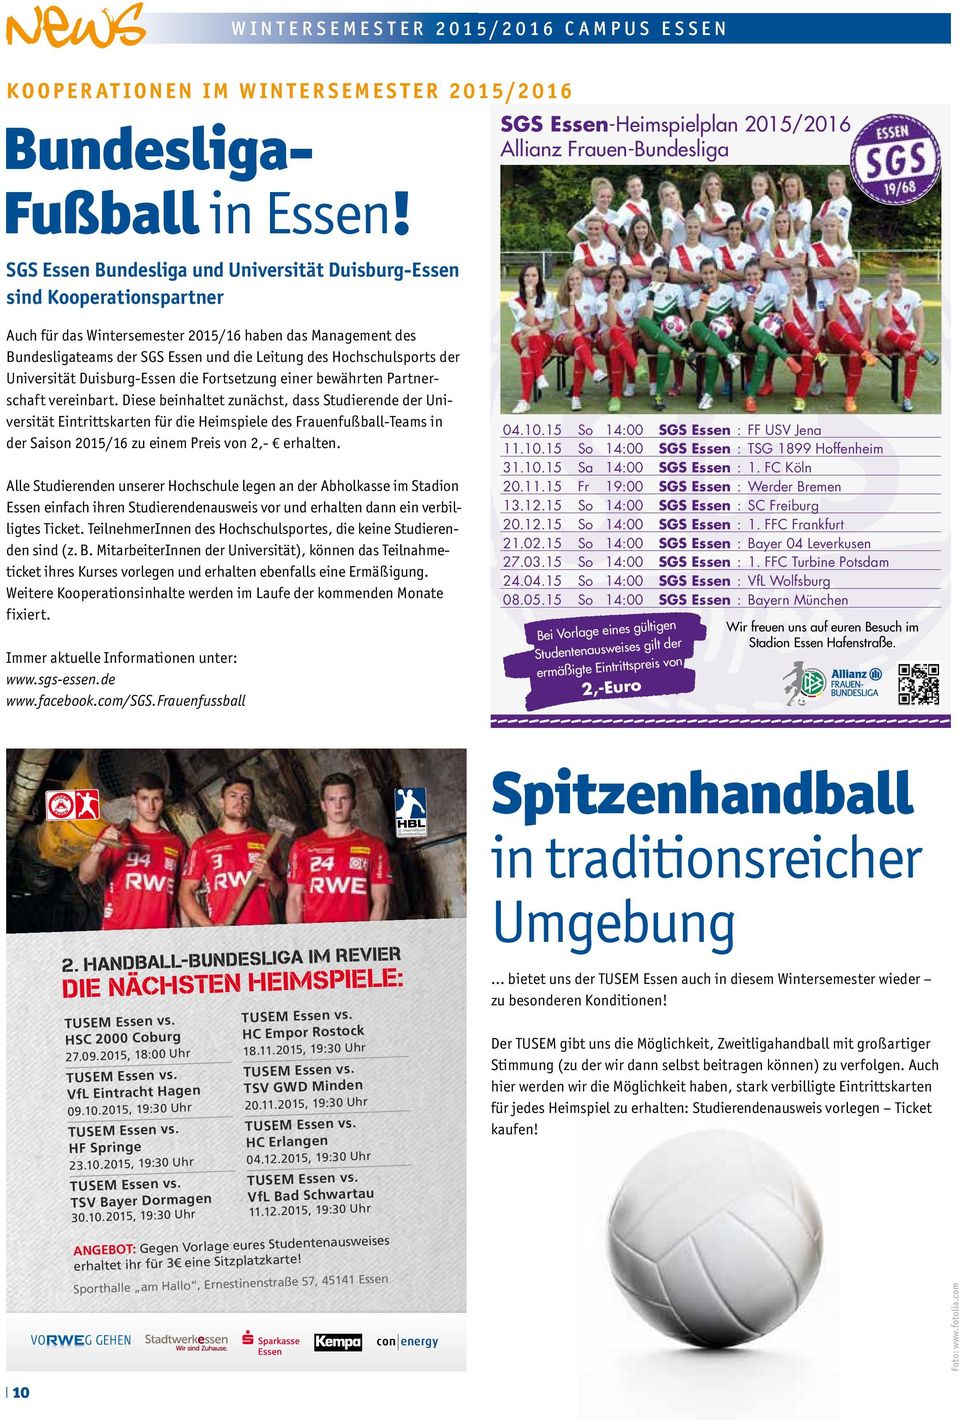 Bundes ligateams der SGS Essen und die Leitung des Hochschulsports der Universität Duisburg-Essen die Fortsetzung einer bewährten Partnerschaft vereinbart.